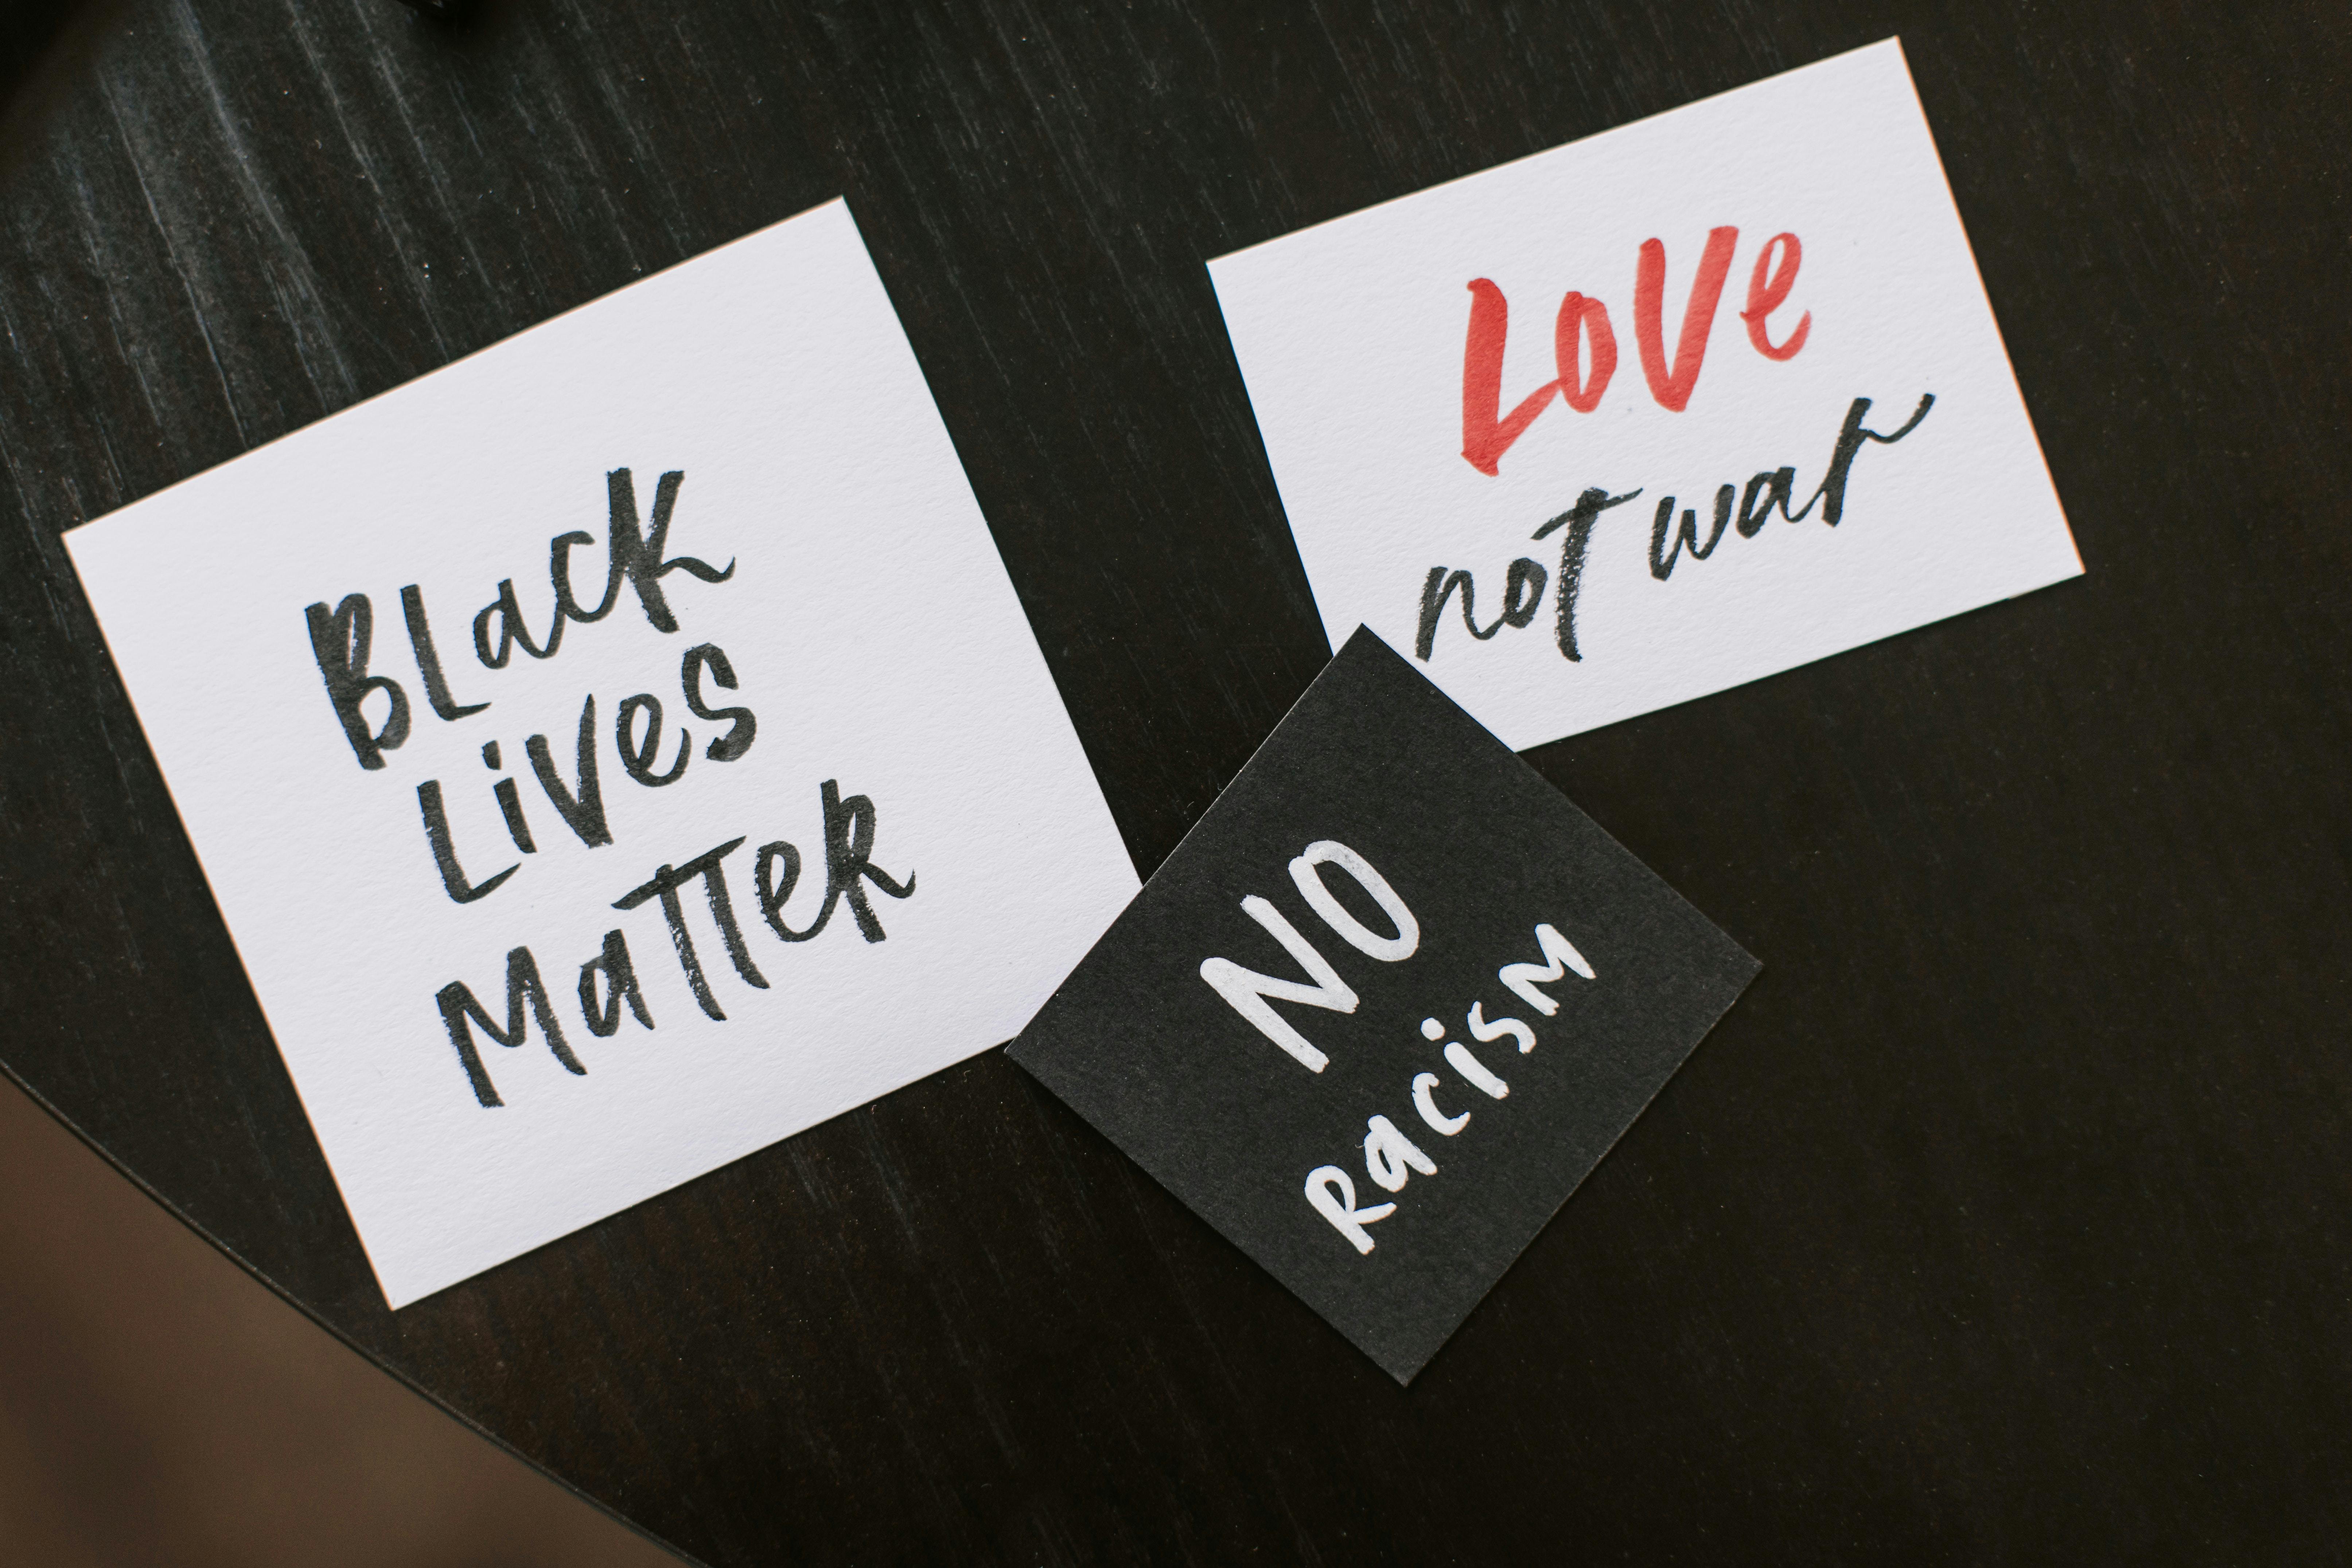 Handwritten text on post-it notes "Black Lives Matter," "Love not war," "No racisim."